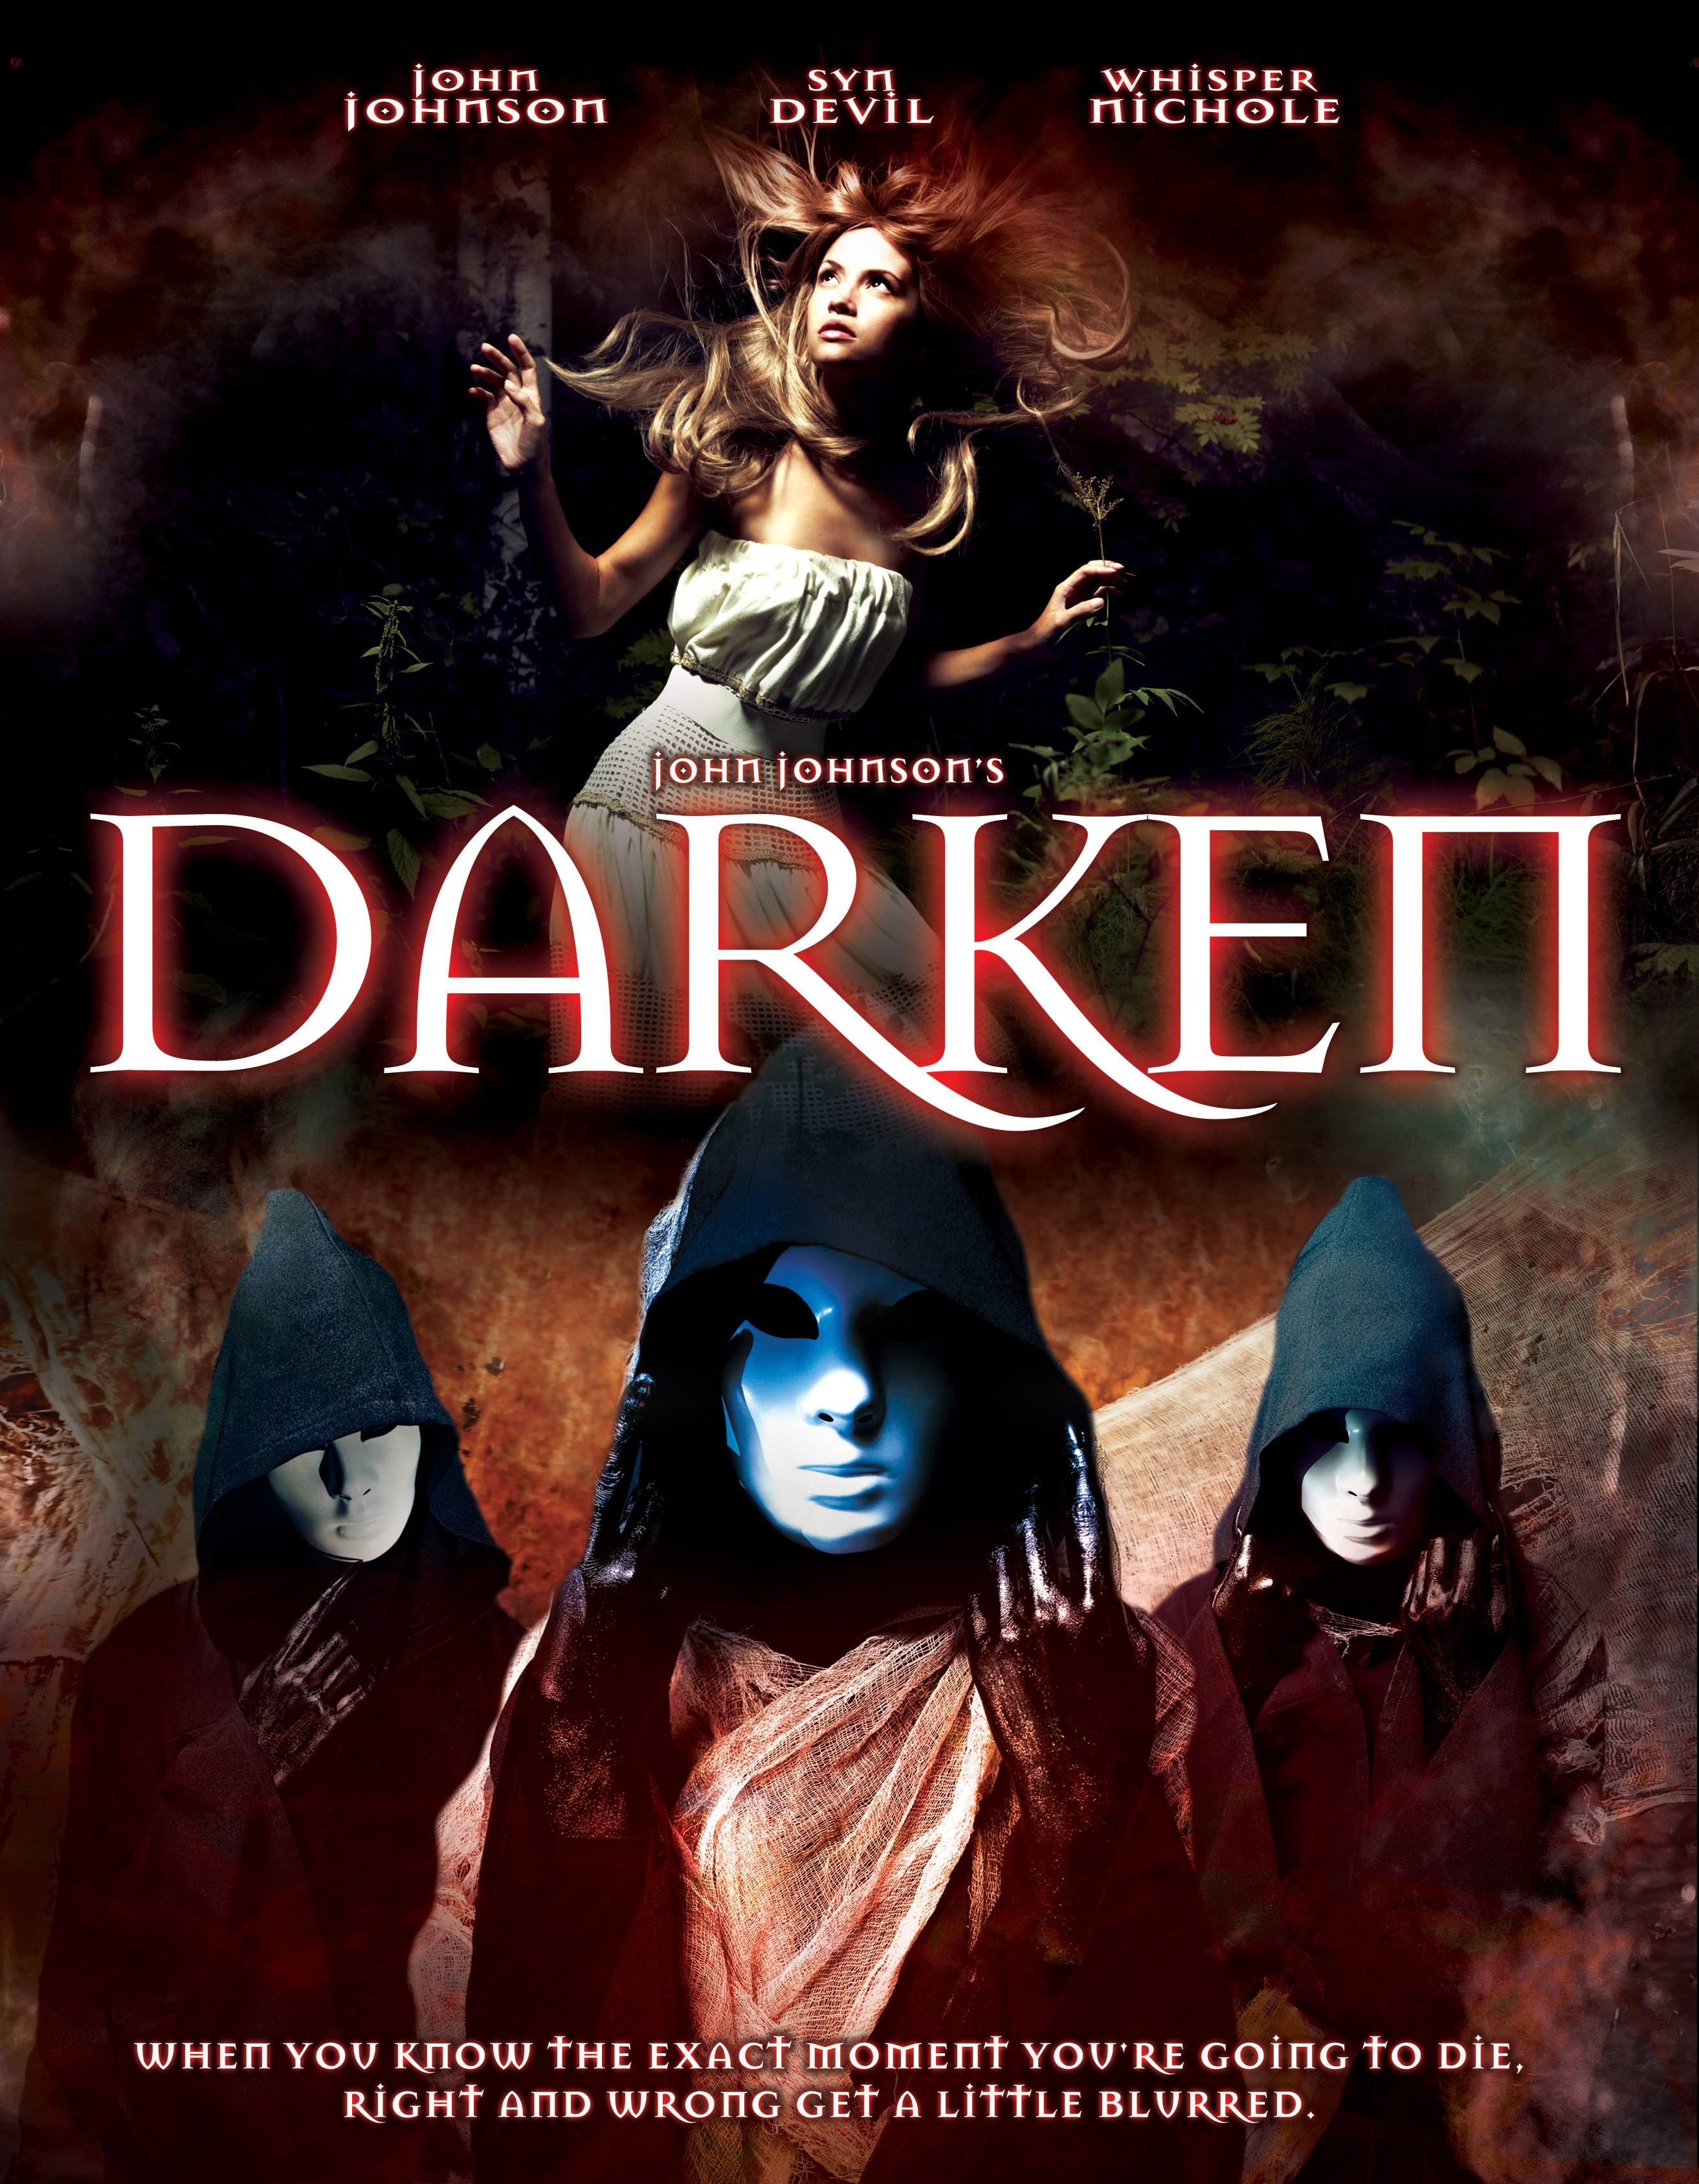 Darken (2006) starring John Johnson on DVD on DVD